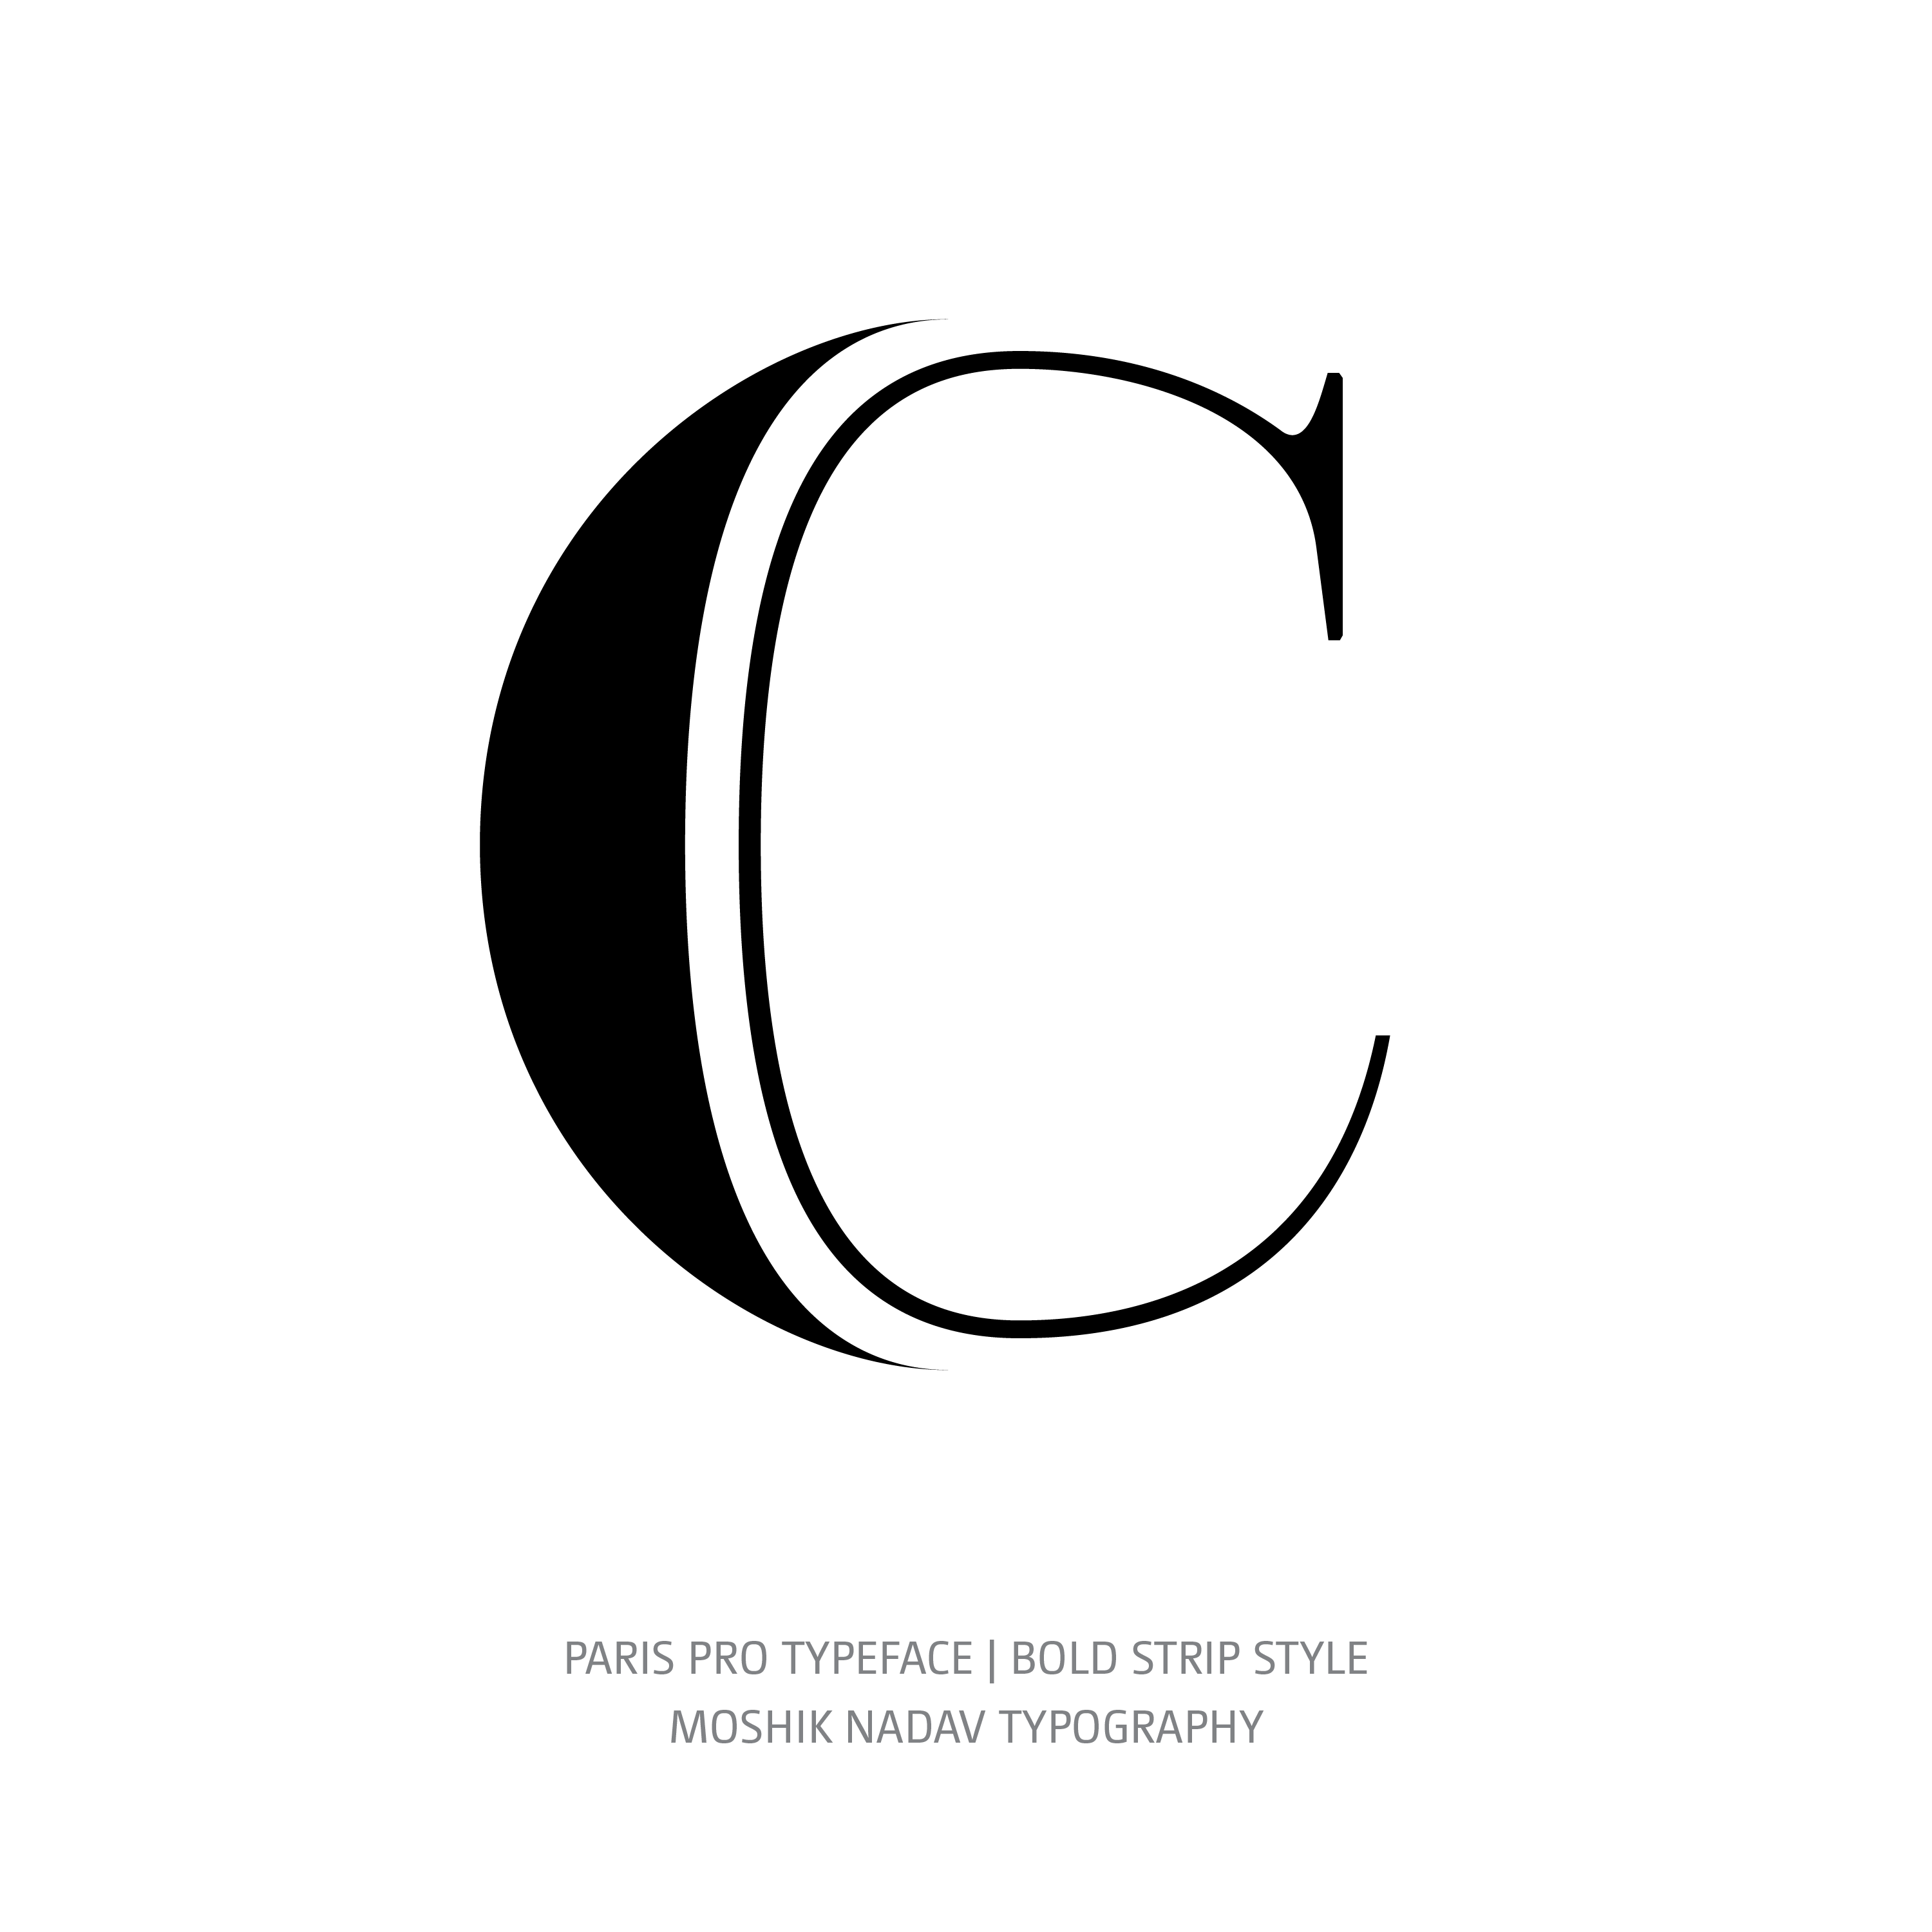 Paris Pro Typeface Bold Strip C